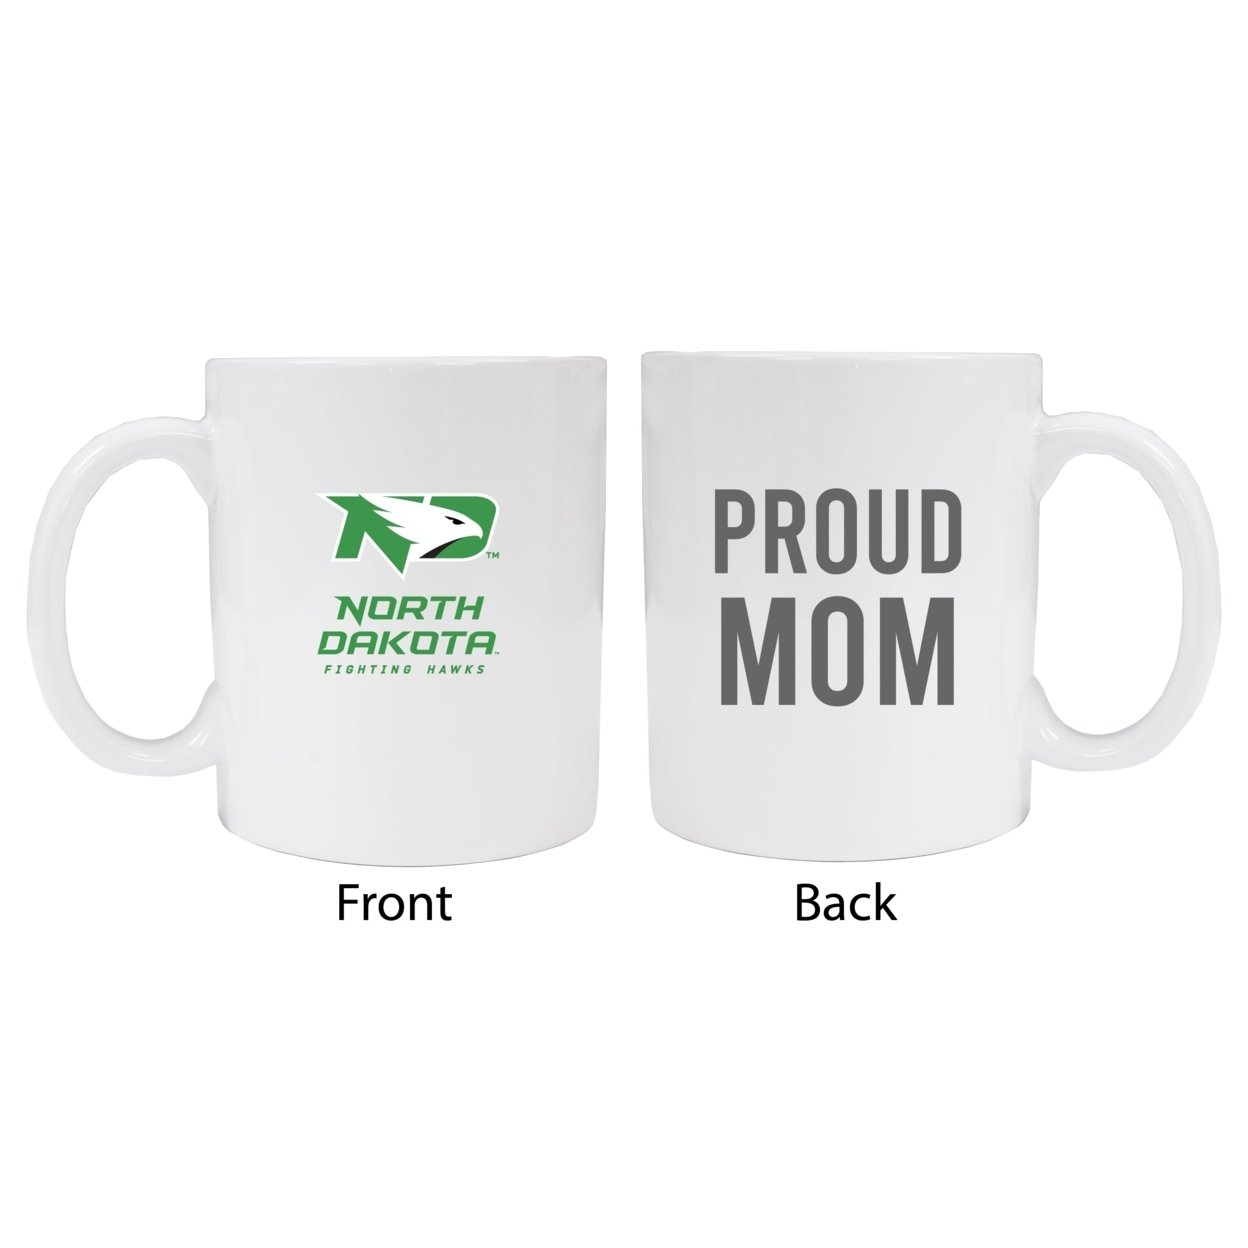 North Dakota Fighting Hawks Proud Mom Ceramic Coffee Mug - White (2 Pack)